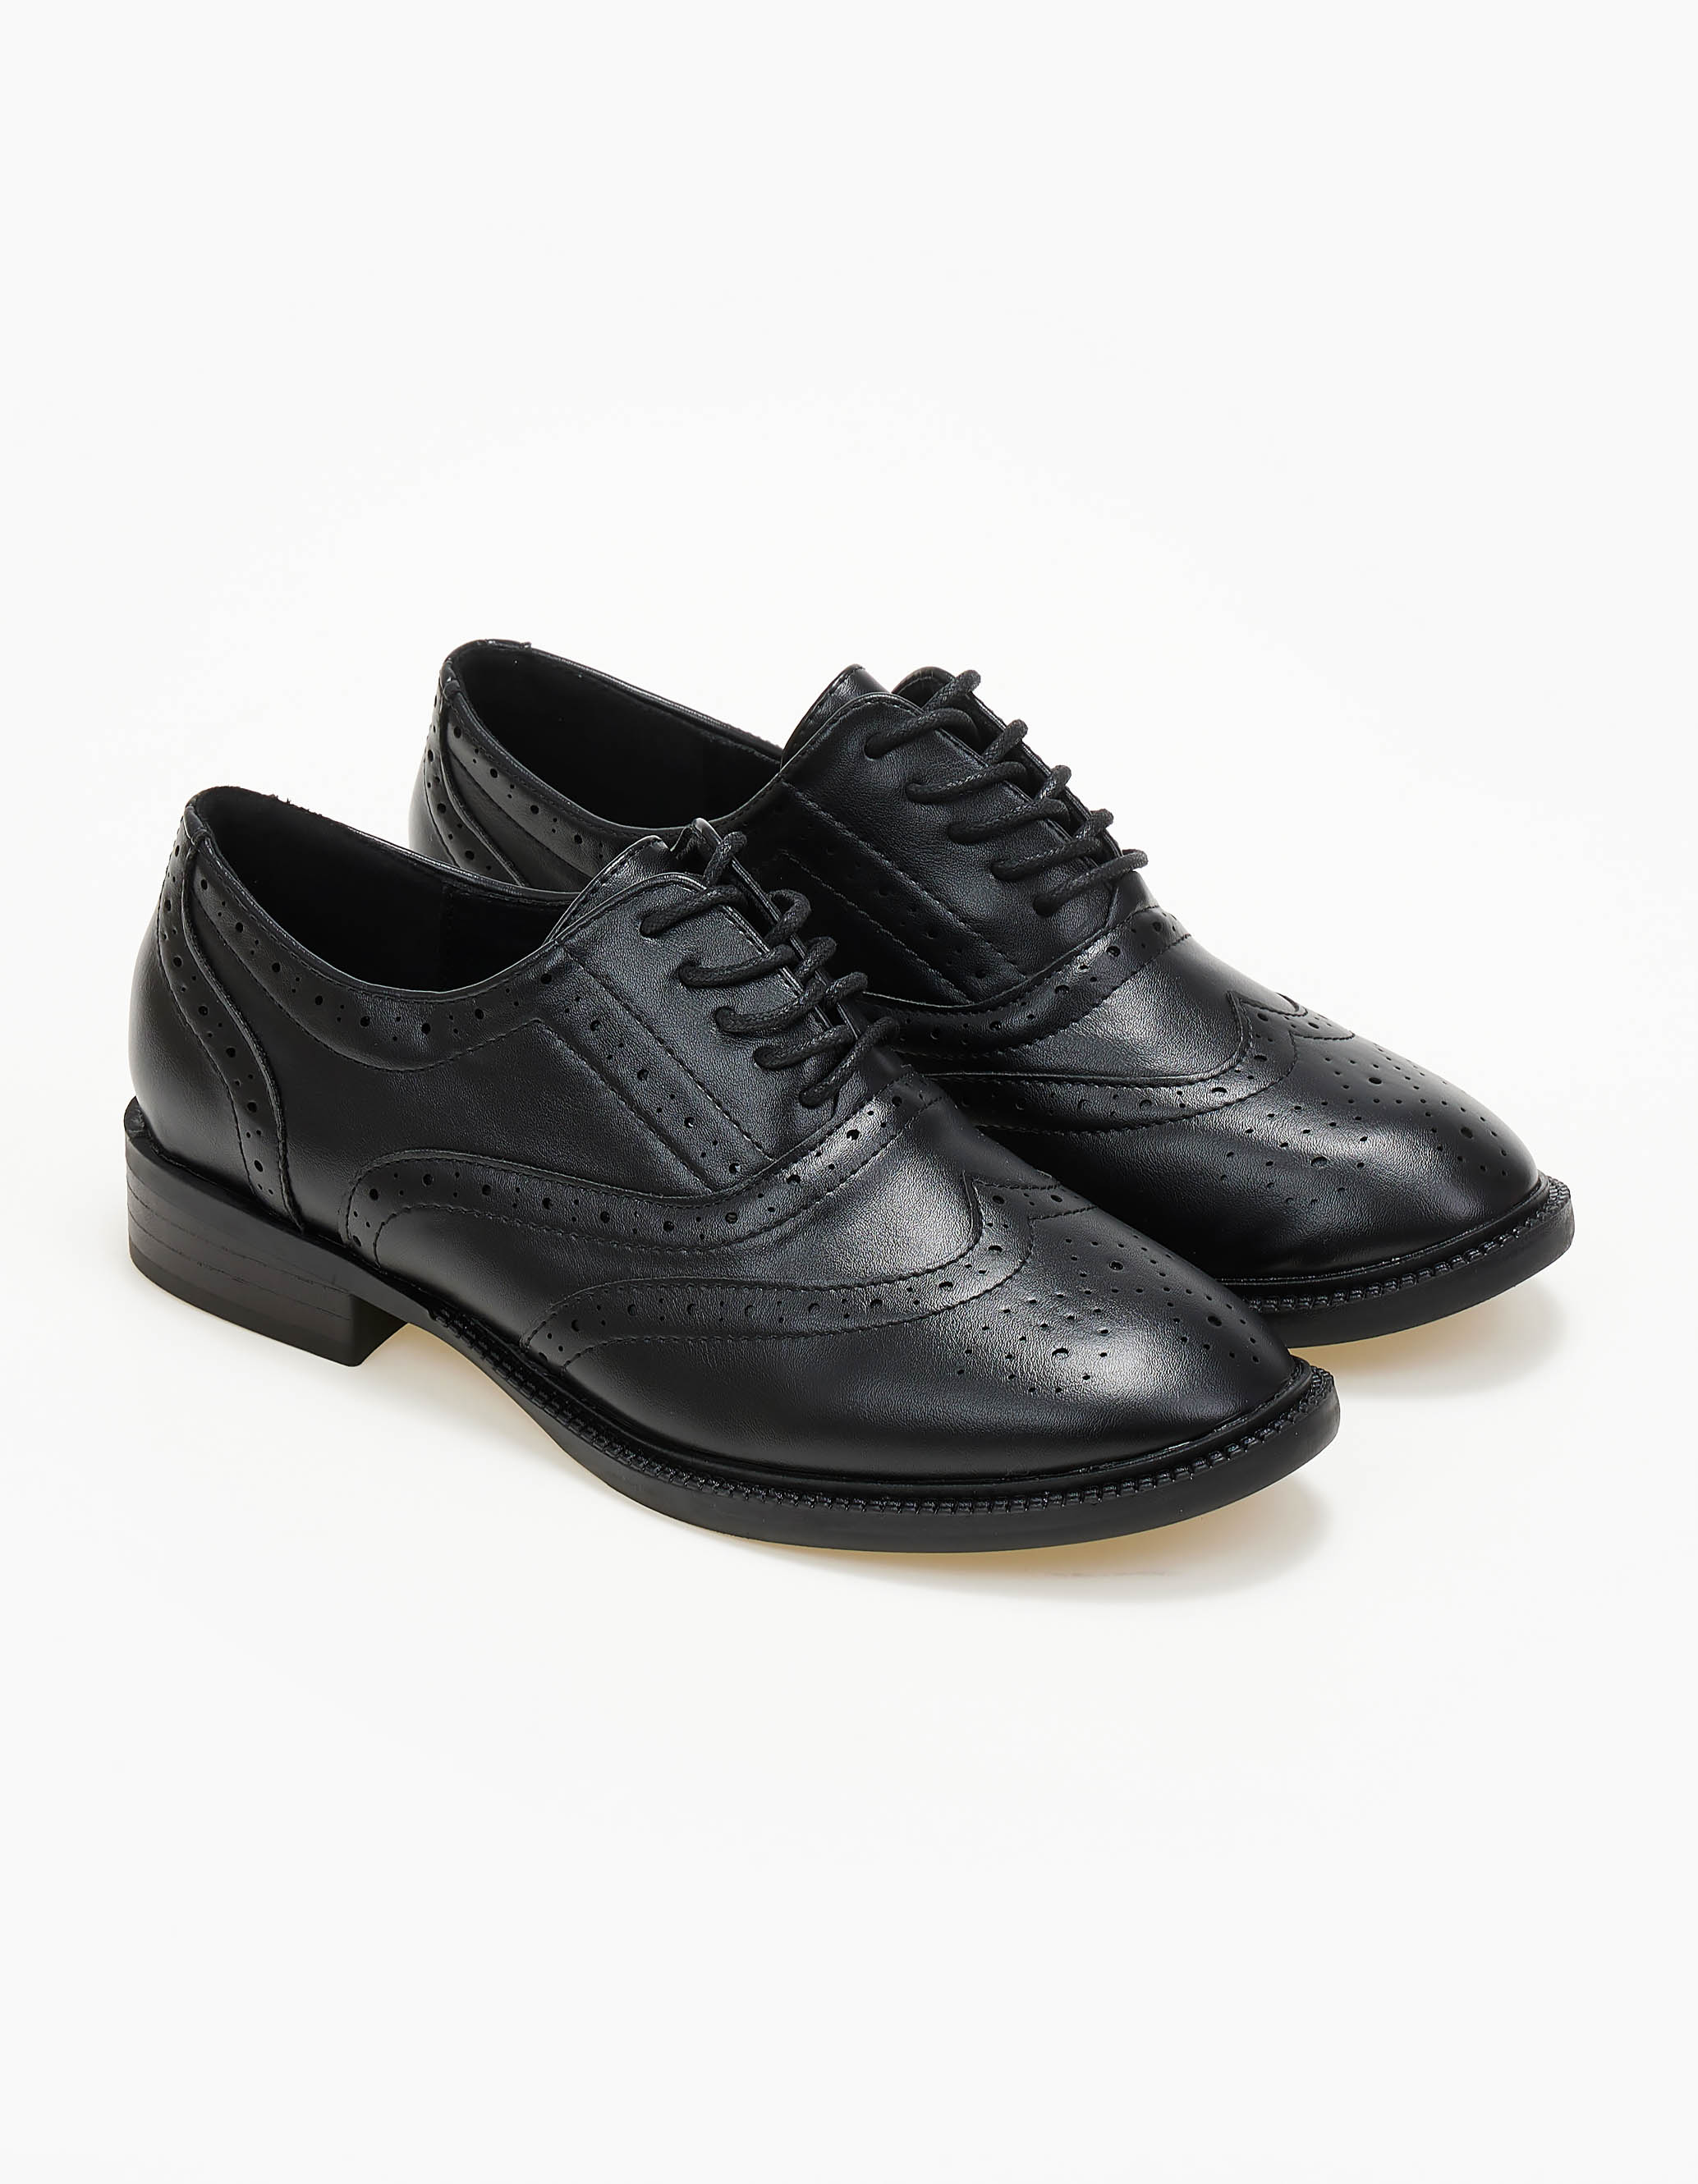 Παπούτσια > Loafers Loafers με κορδόνια - Μαύρο